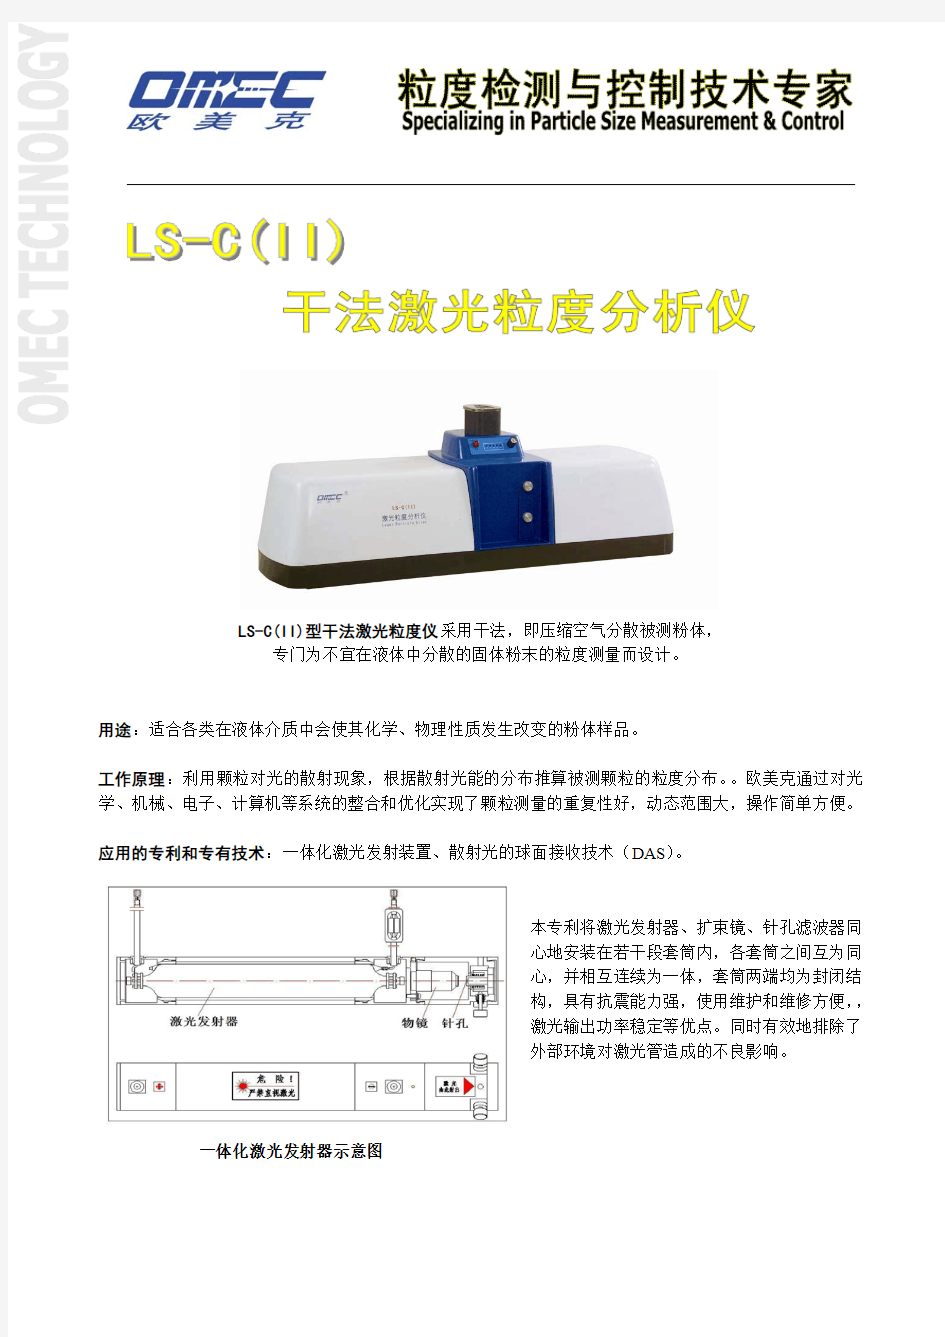 激光粒度检测仪LS-C(II)产品简介